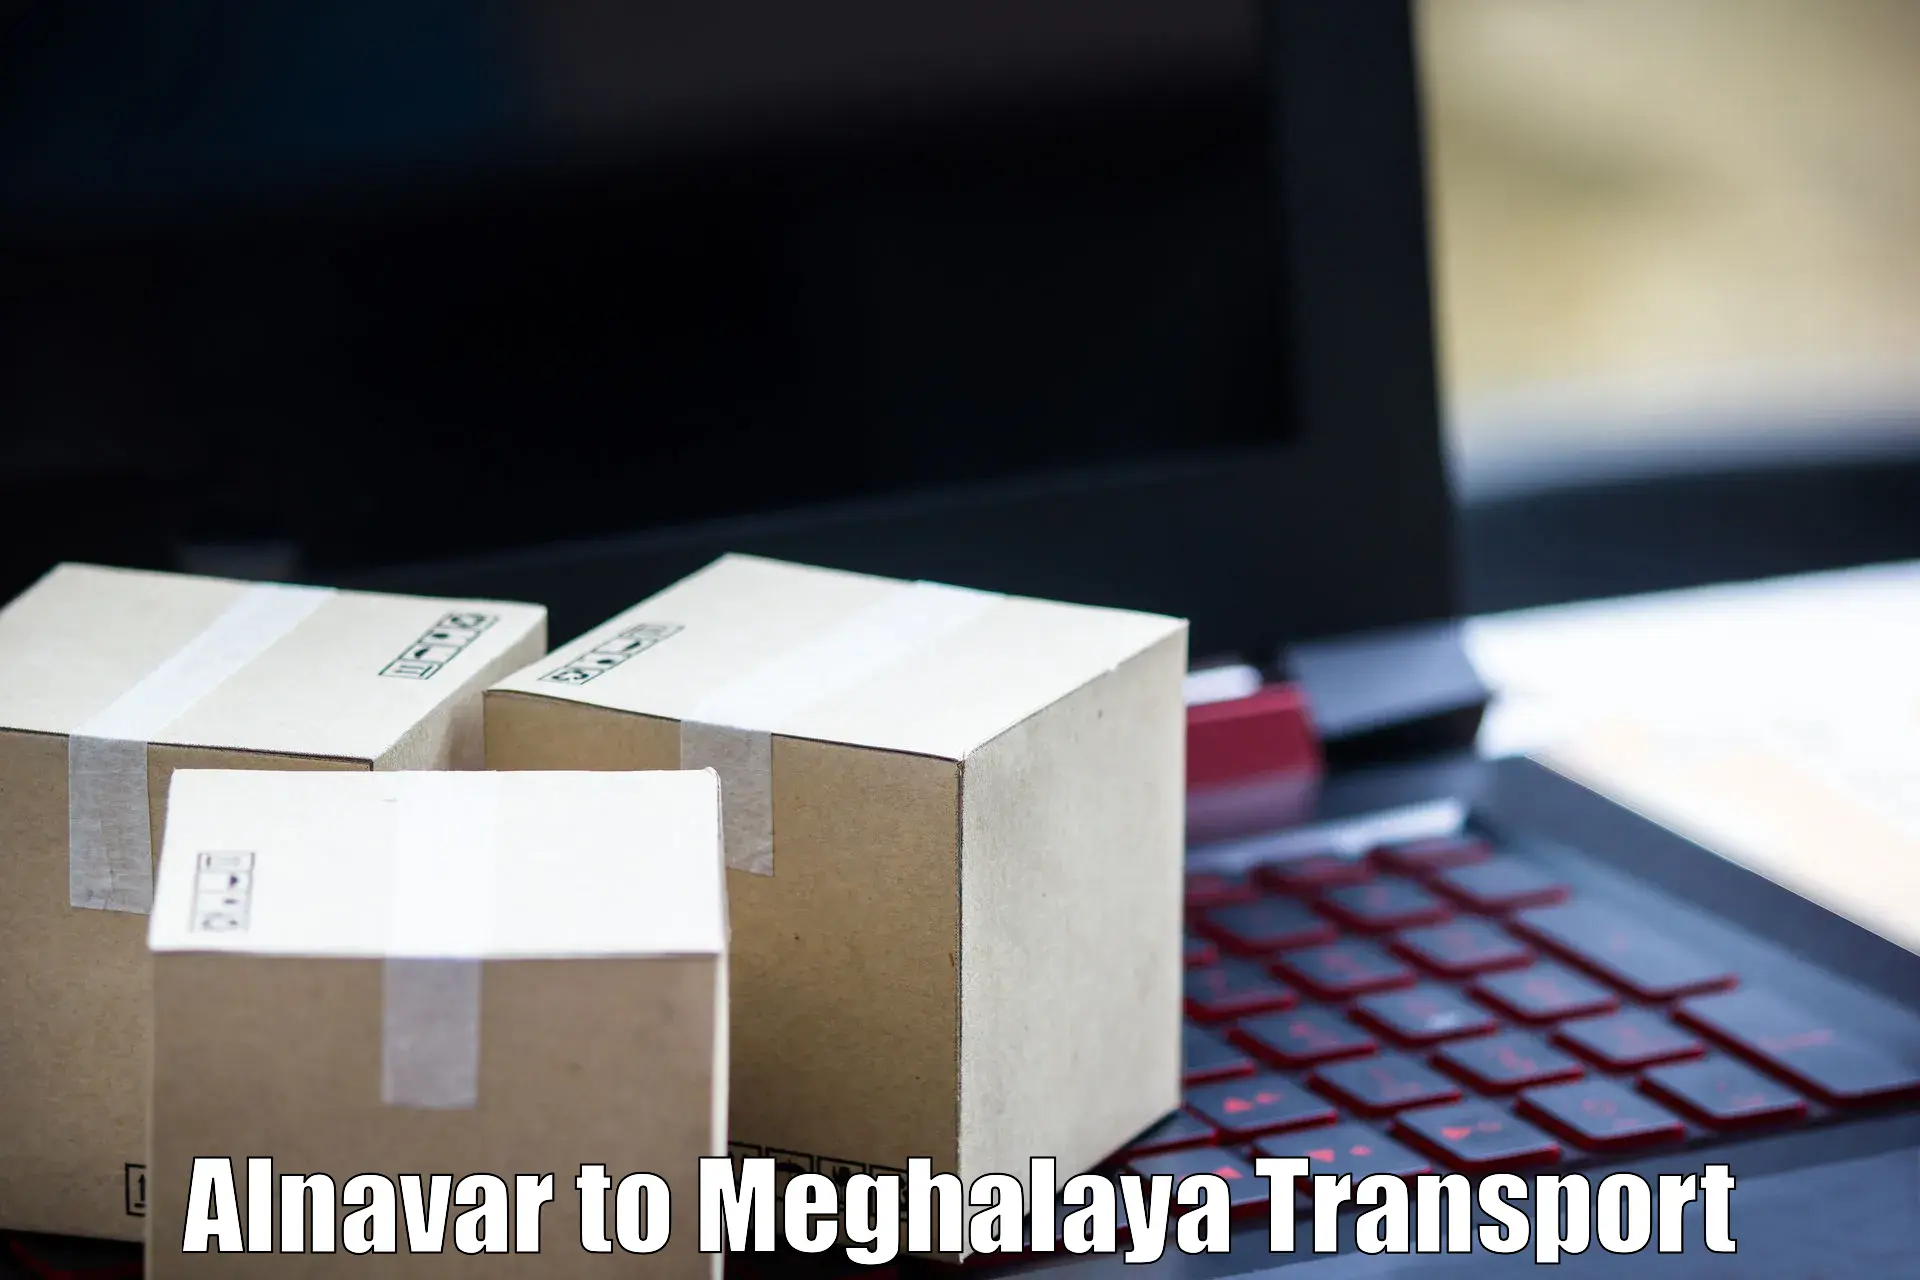 Delivery service Alnavar to Cherrapunji